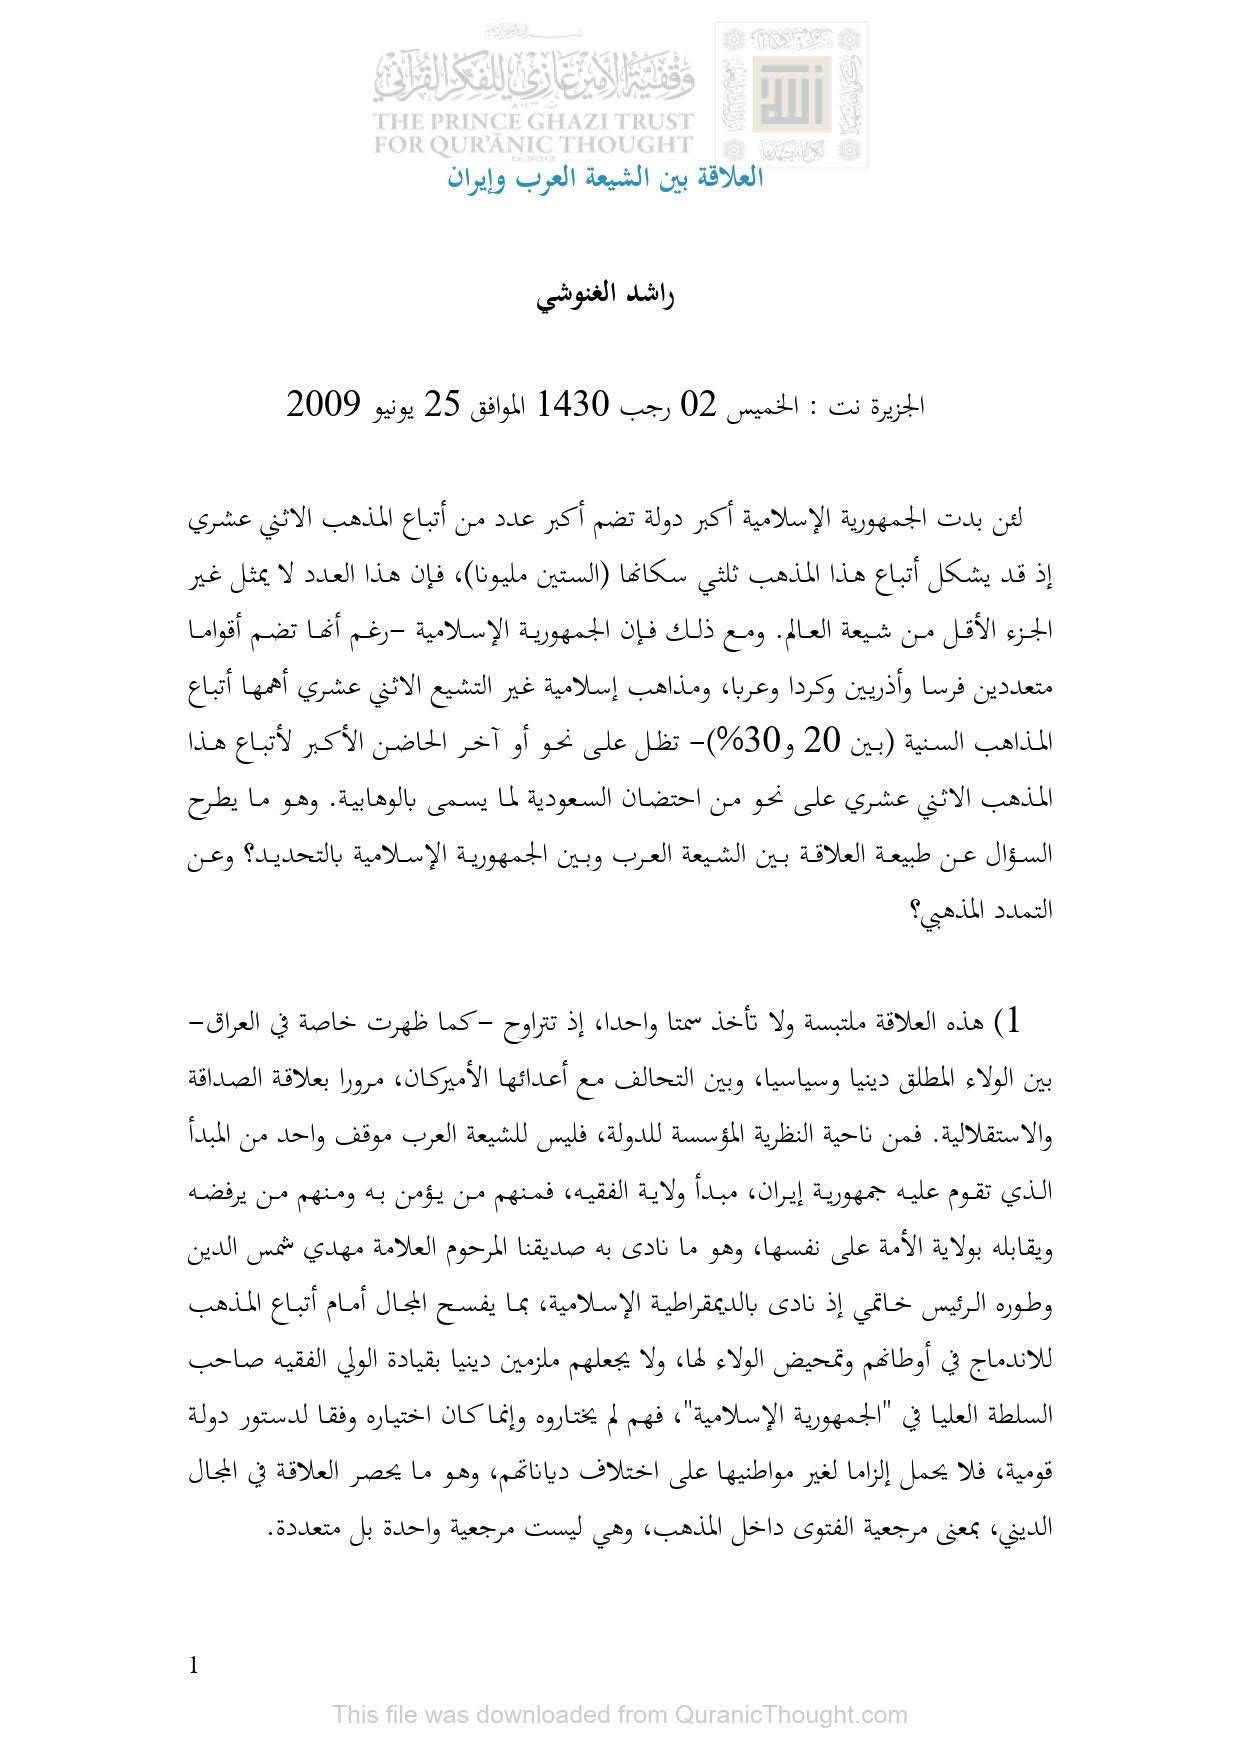 العلاقة بين الشيعة العرب وإيران _ مقالة في موقع الجزيرة نت